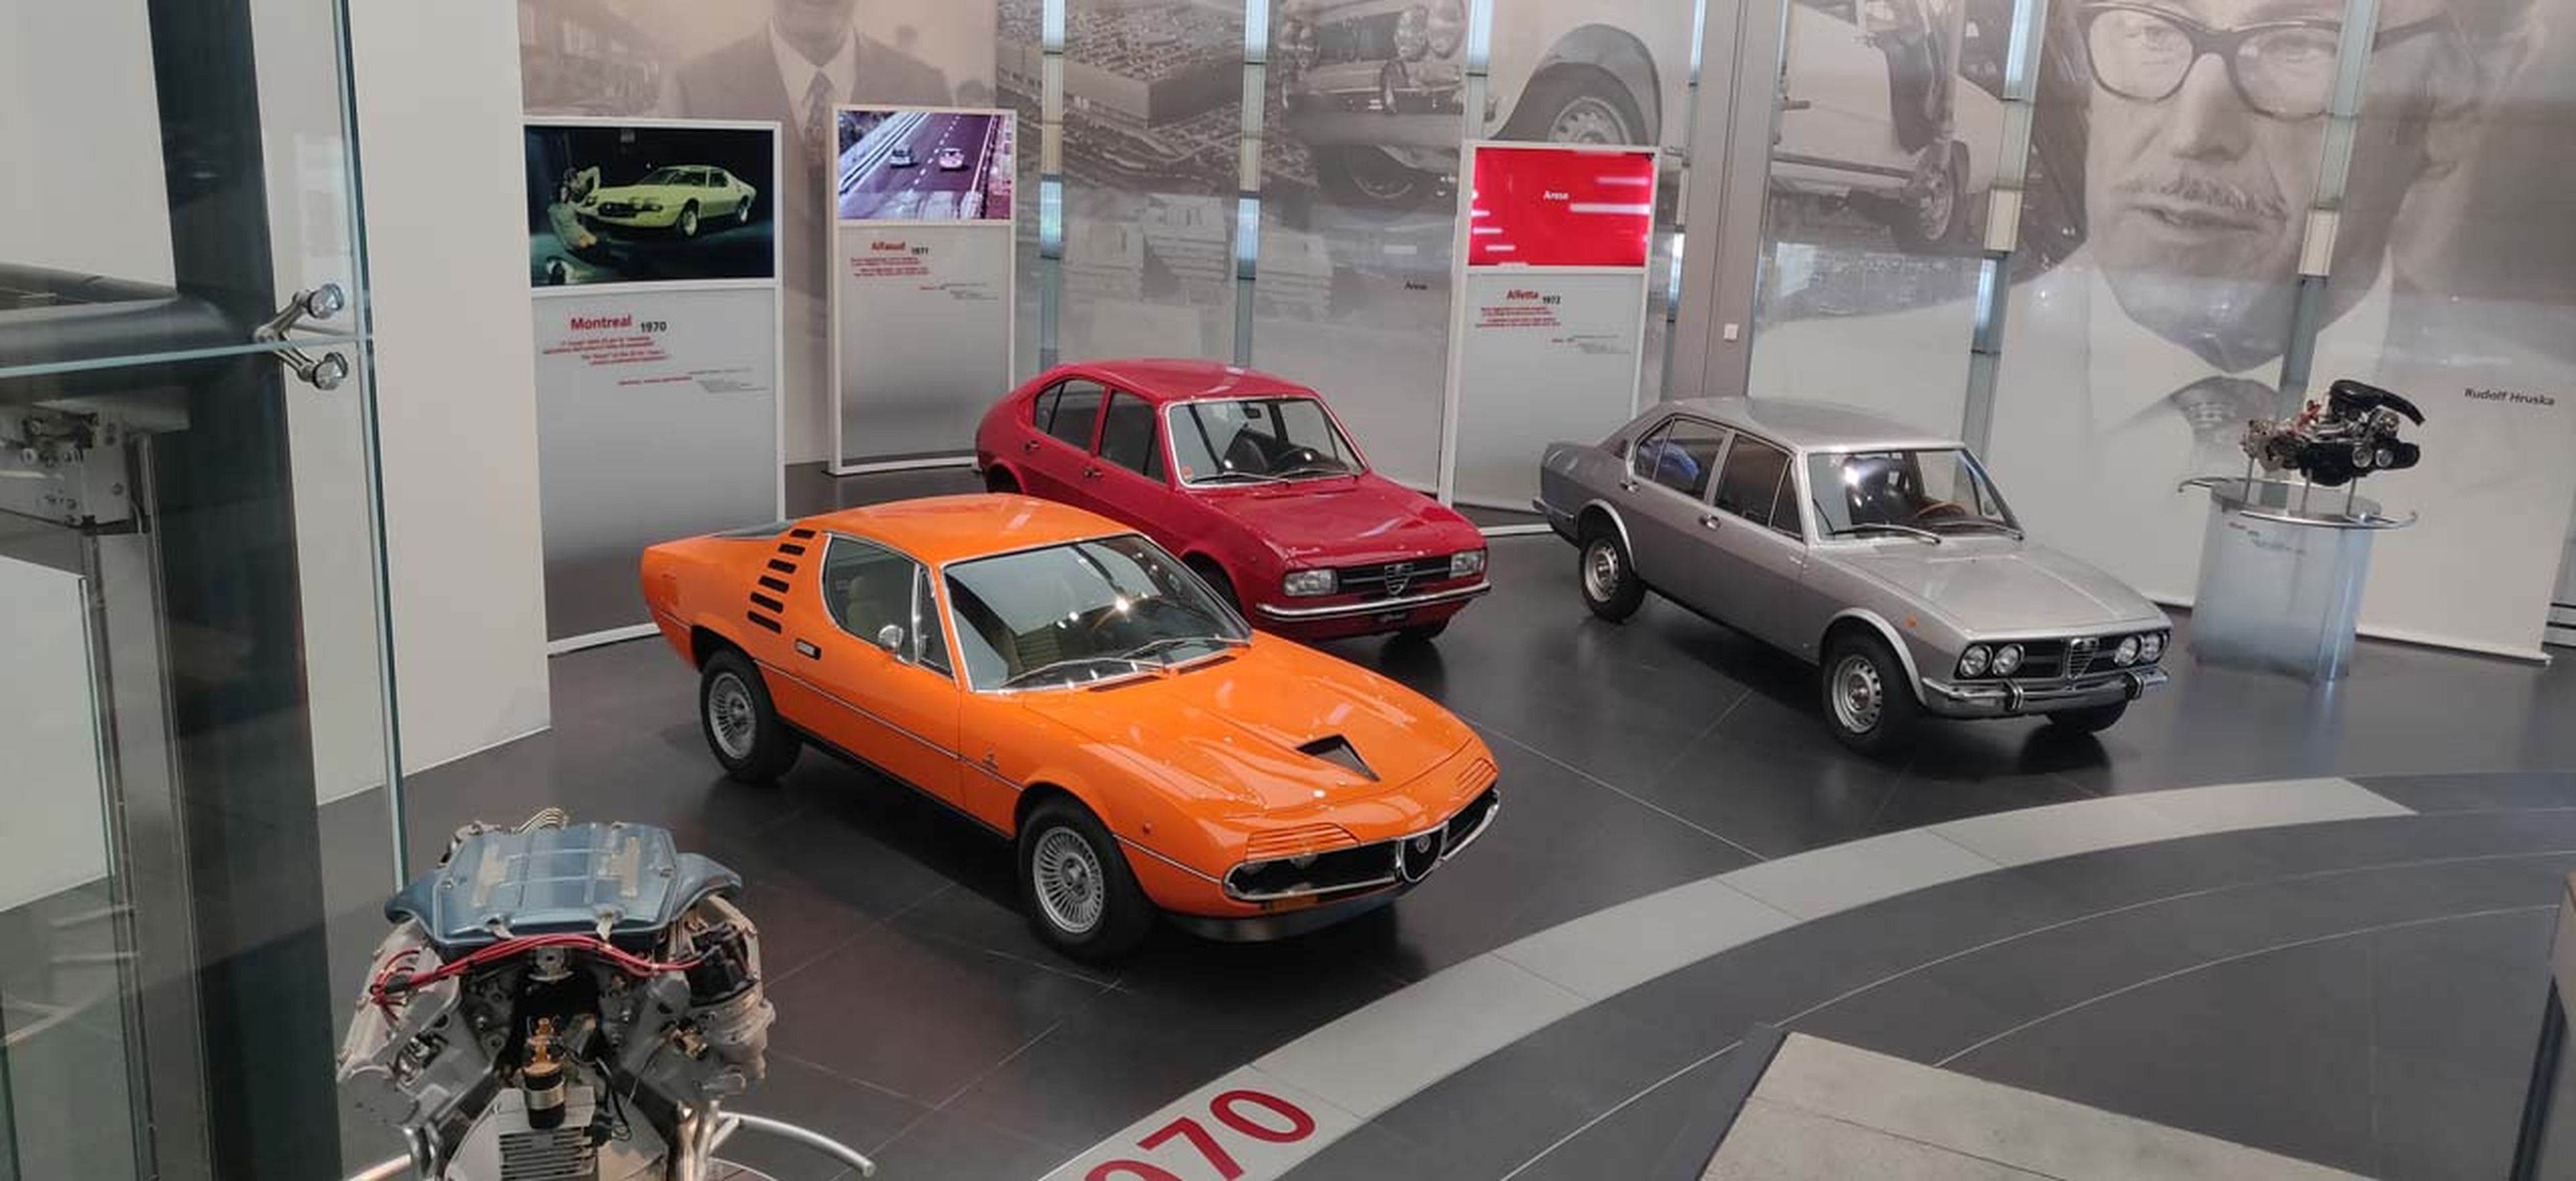 Galería 111 aniversario de Alfa Romeo, Museo de Arese